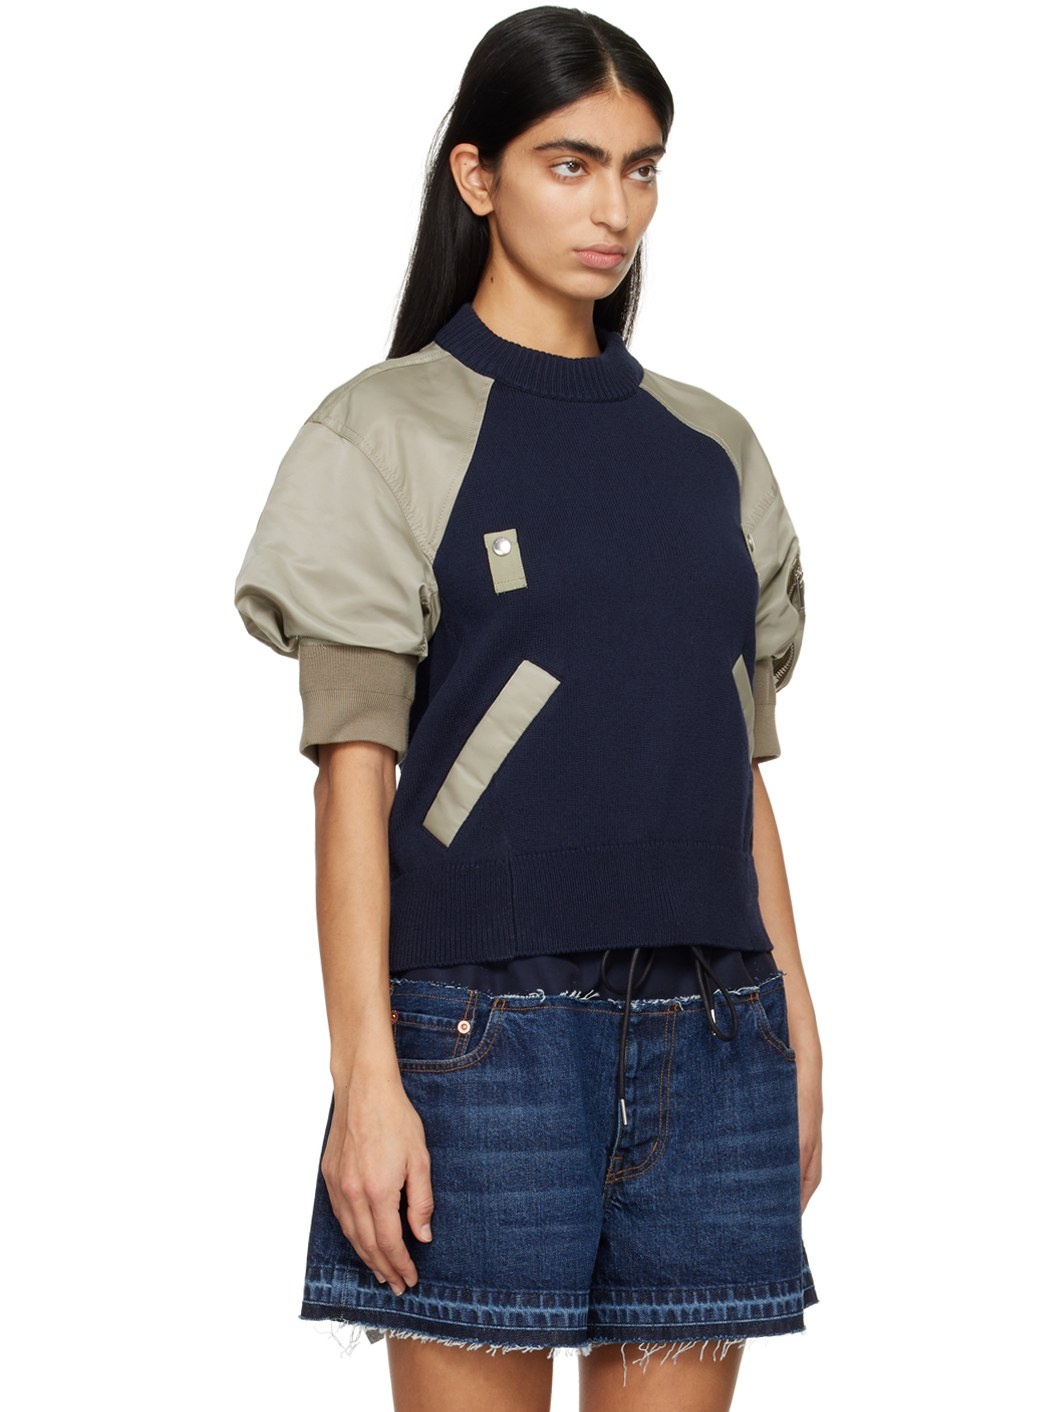 Navy & Khaki Paneled Sweater - 2